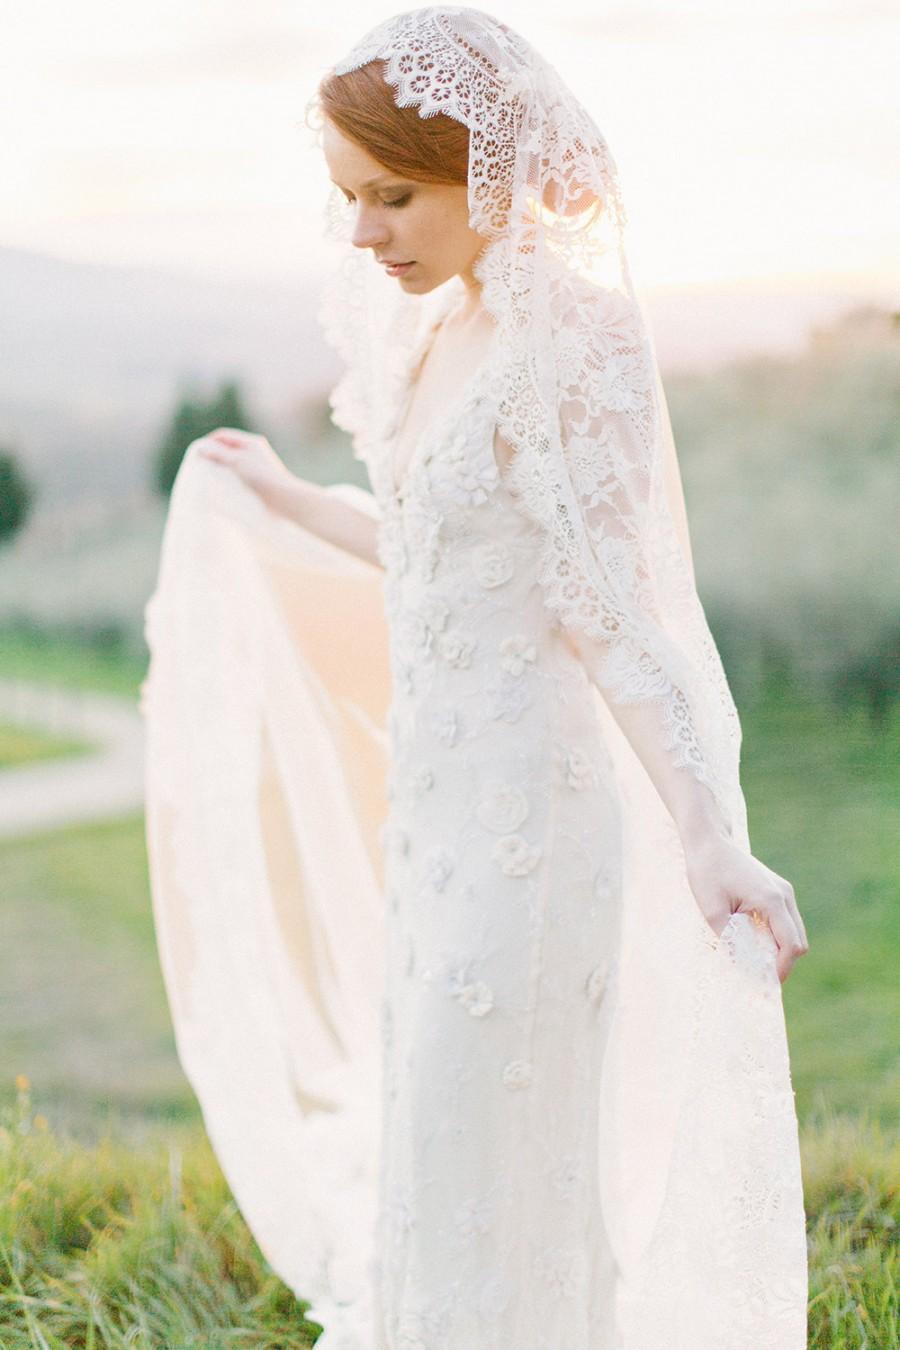 زفاف - Wedding Veil, Lace Bridal Mantilla veil, Ivory Cathedral length veil - Style 301